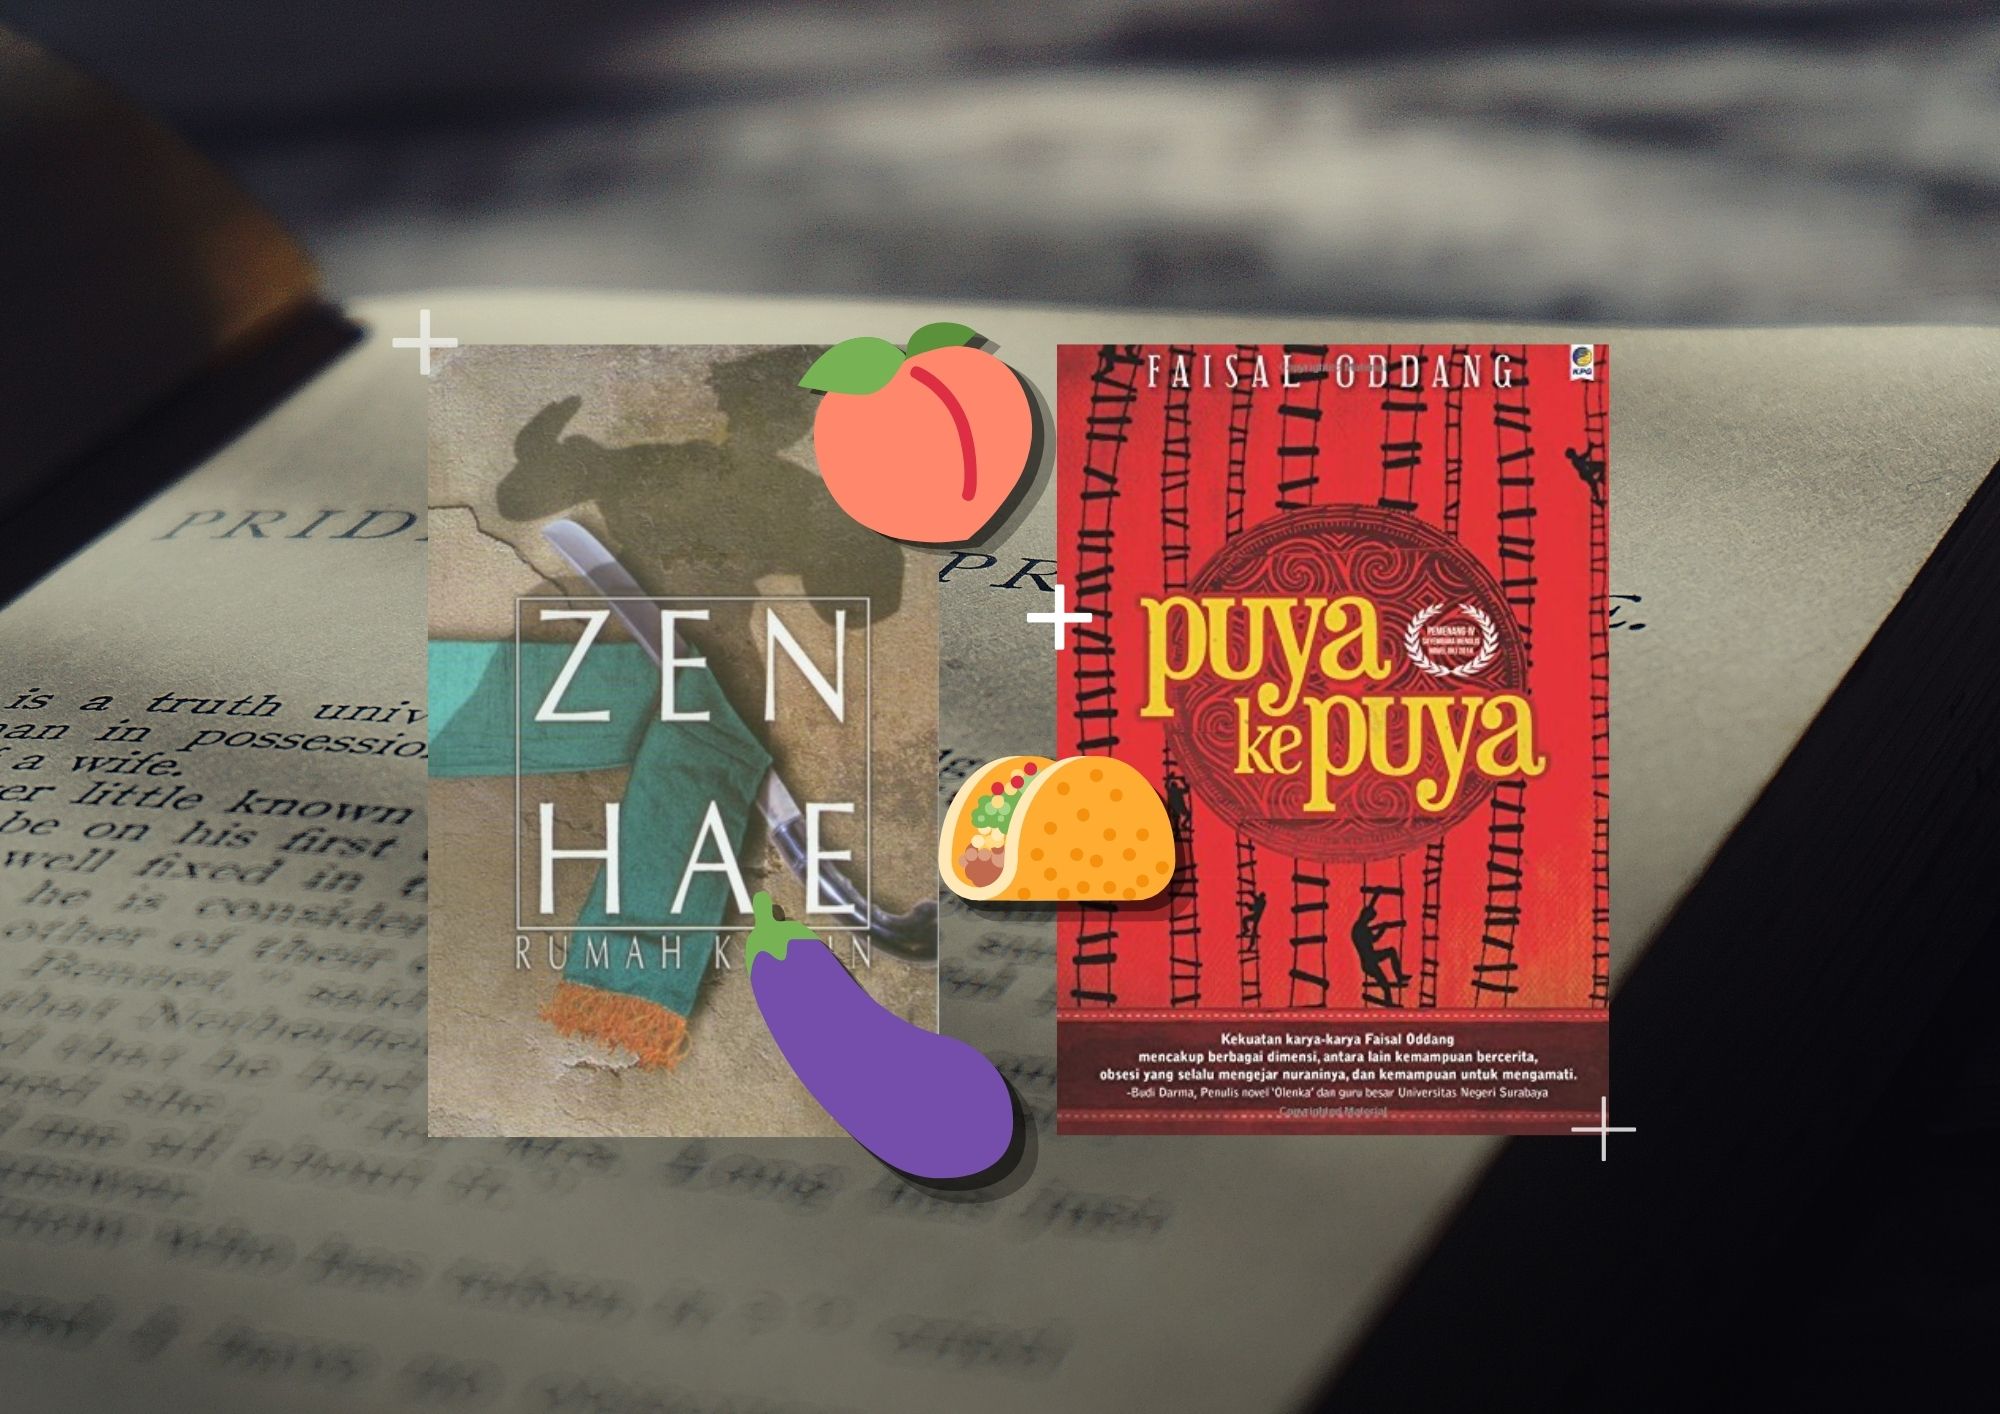 'Rumah Kawin' oleh Zen Hae dan 'Puya ke Puya' oleh Faisal Oddang